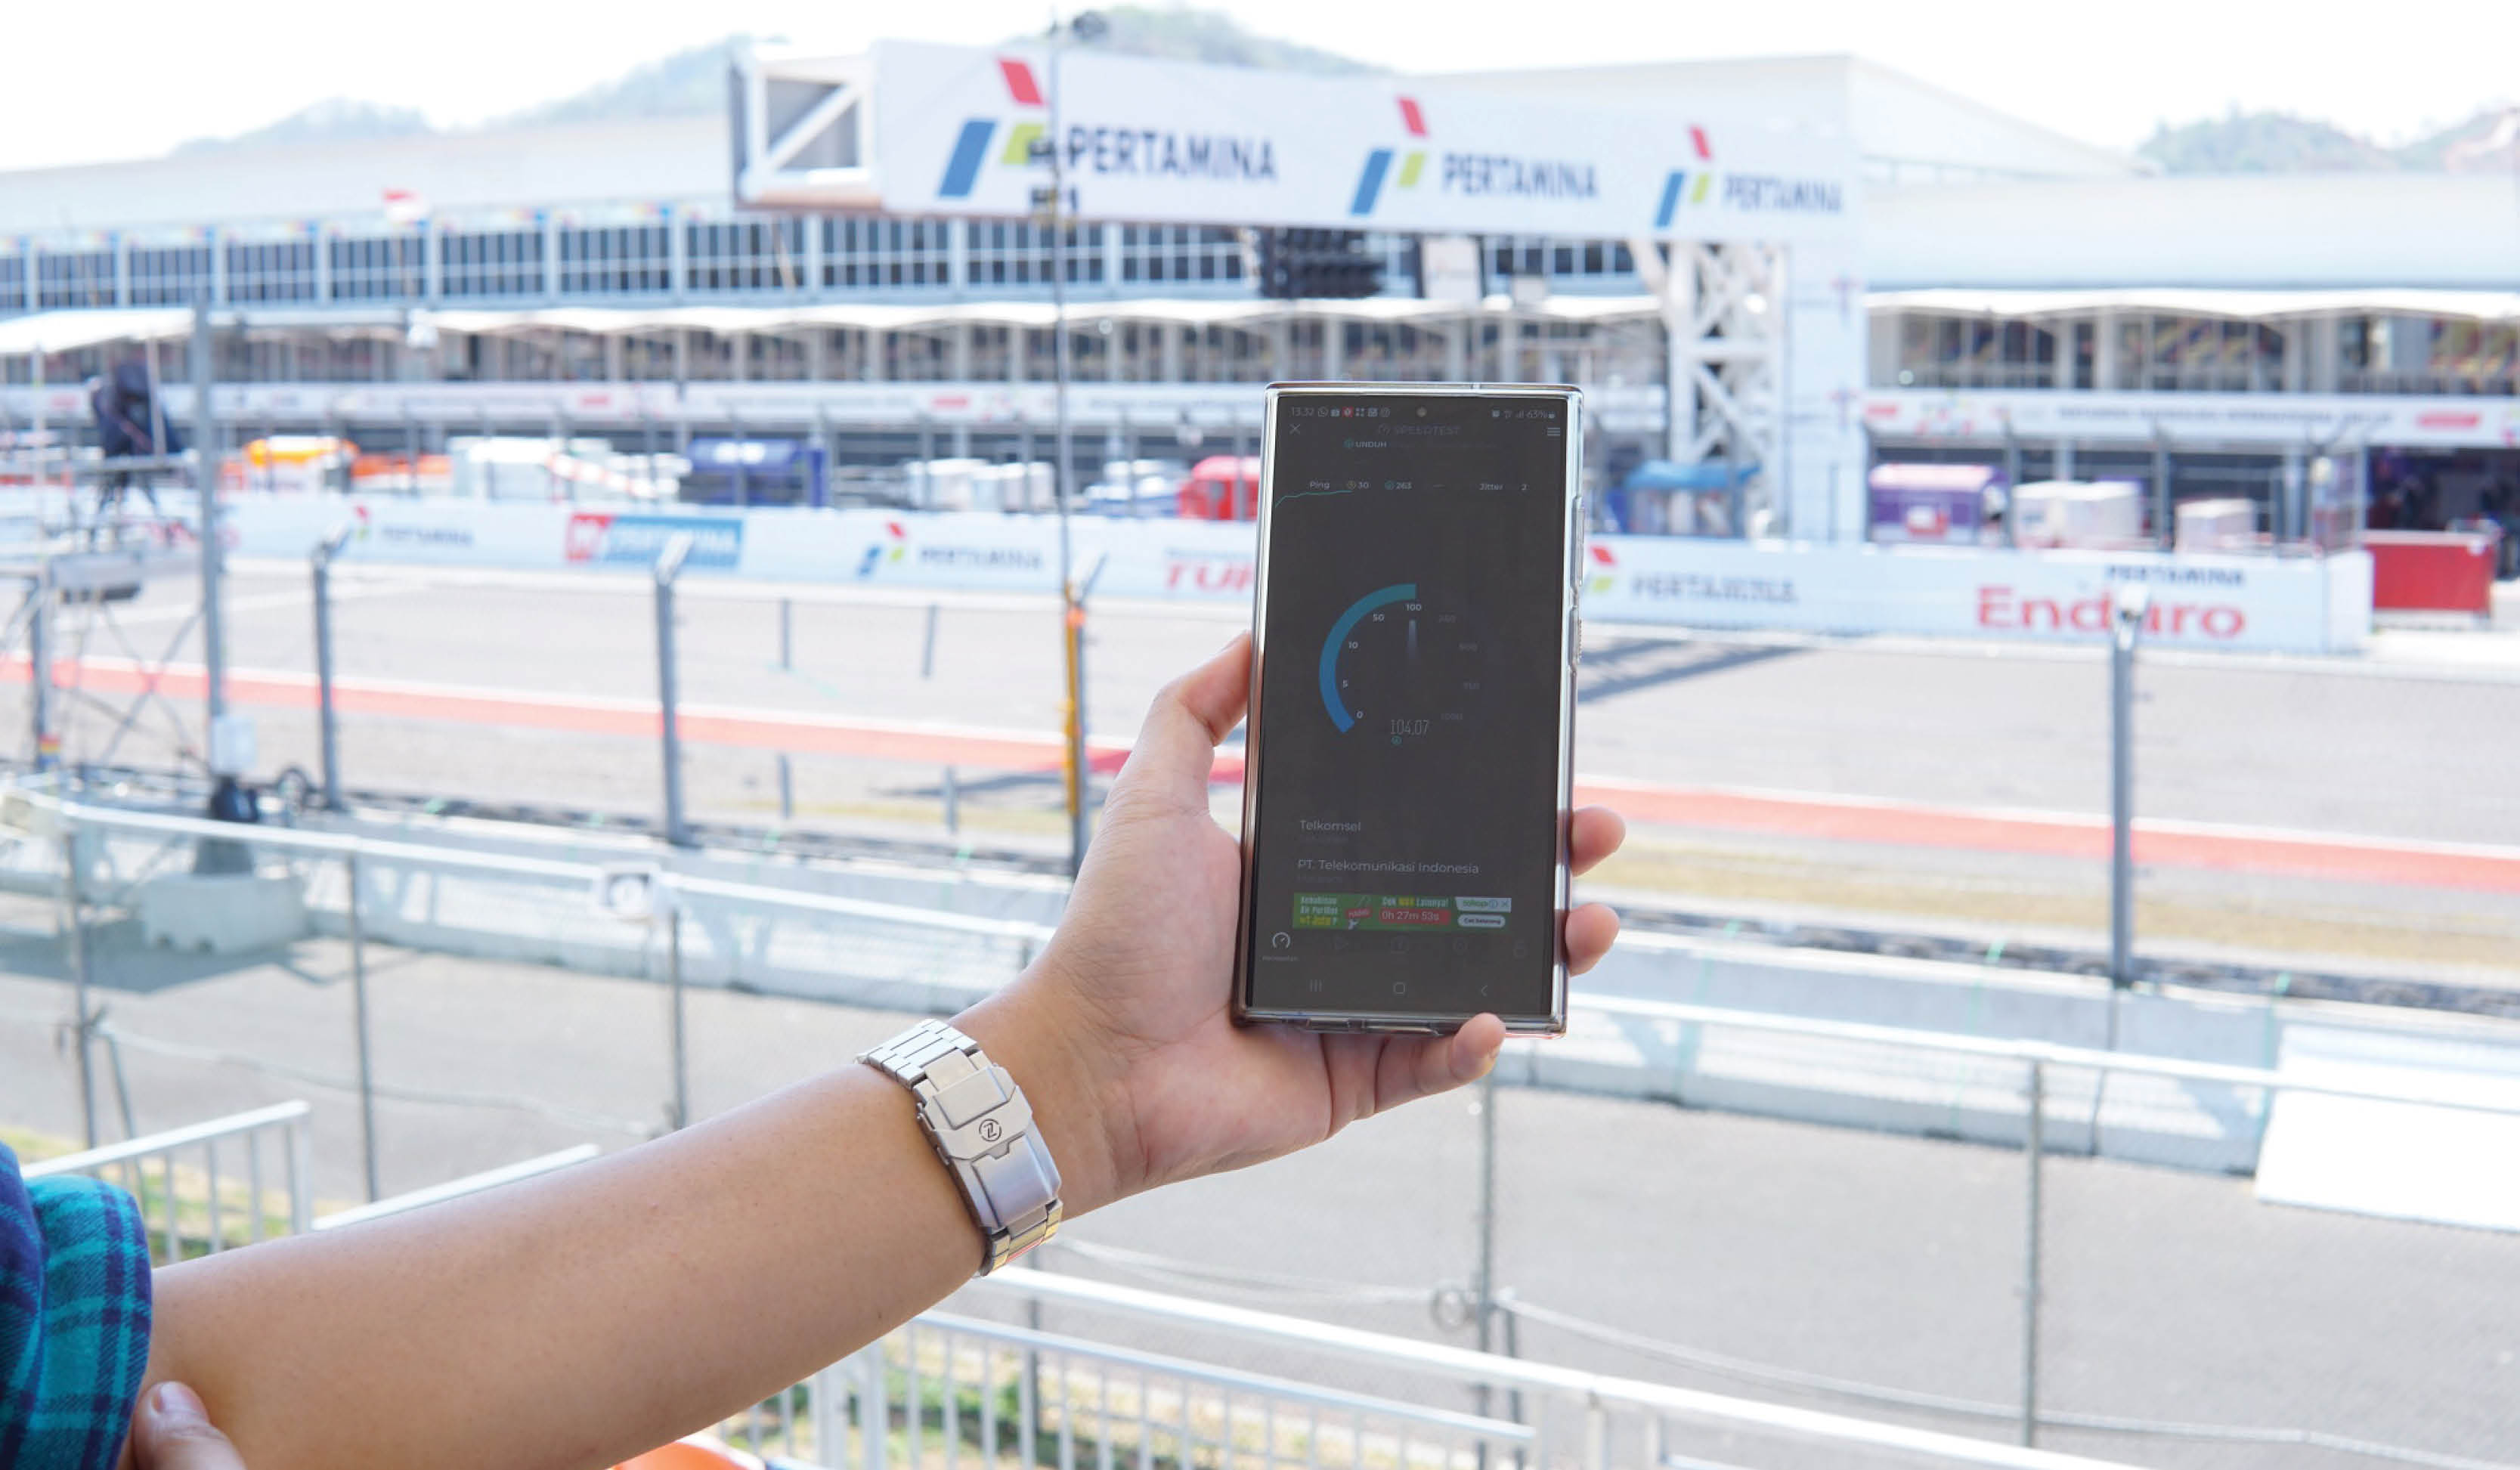 Dukung MotoGP 2023 Mandalika, Telkomsel Siapkan Layanan dan Konektivitas Digital Berkualitas Terdepan